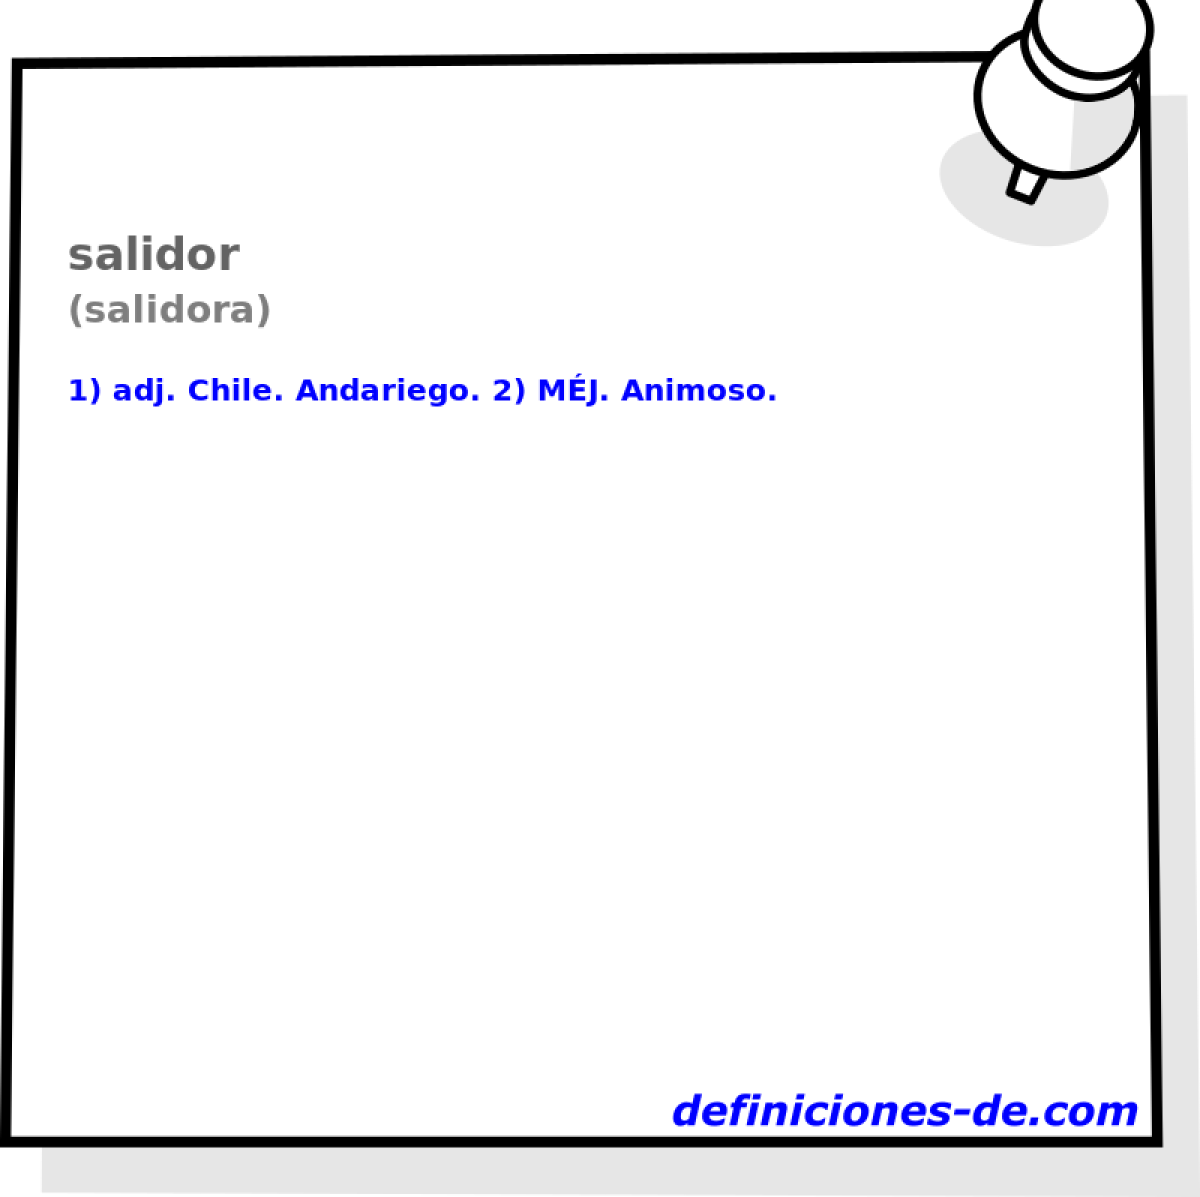 salidor (salidora)